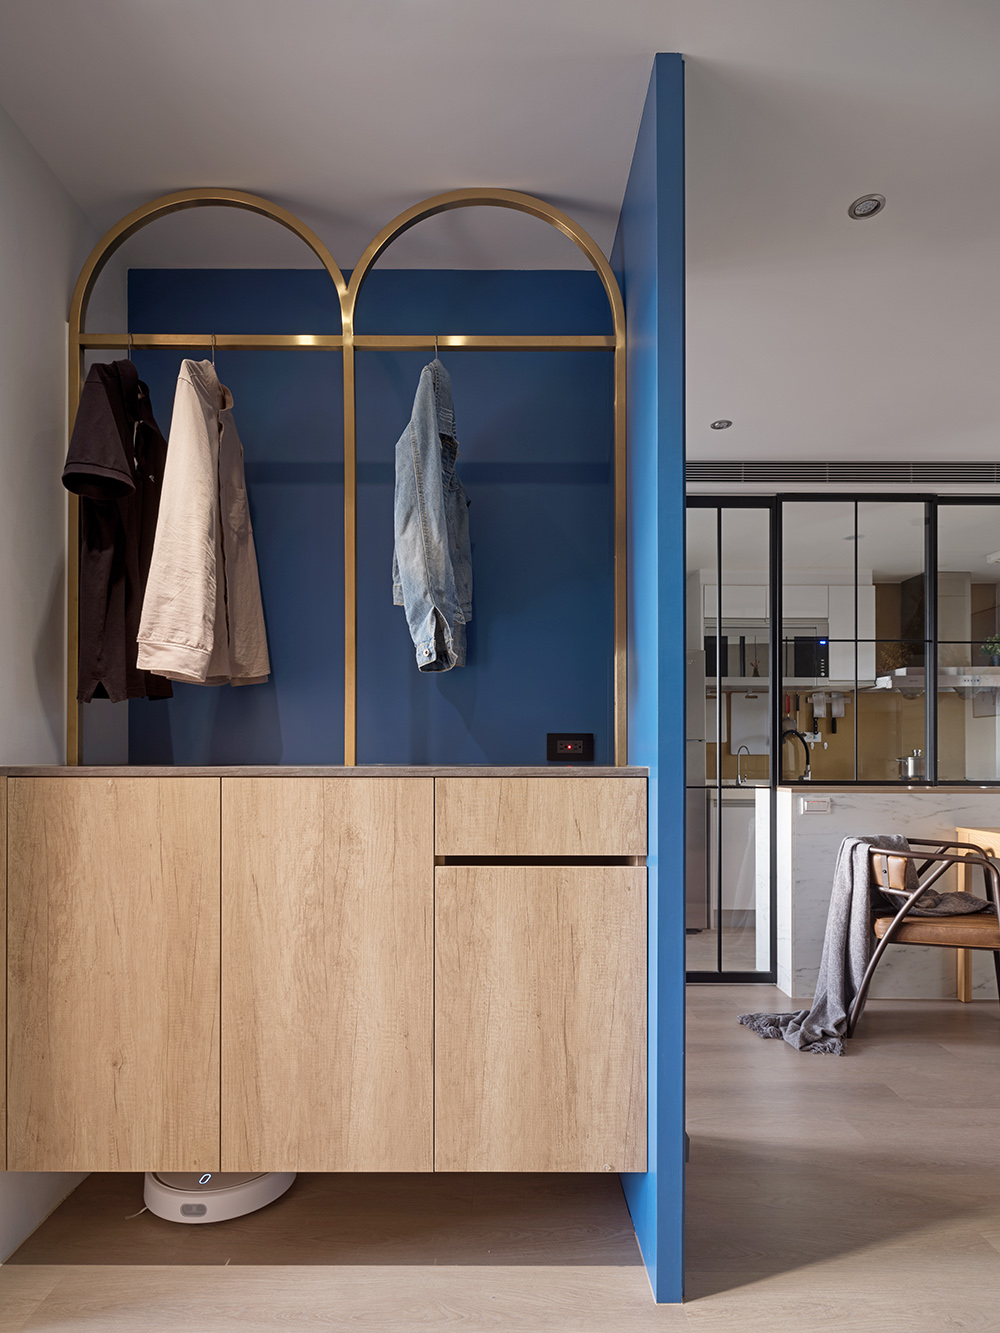 Lối vào căn hộ bắt mắt với khu vực lưu trữ được bao quanh bởi gam màu xanh coban kết hợp tủ gỗ và khung treo áo khoác bằng kim loại mạ vàng đồng kiểu mái vòm ấn tượng.